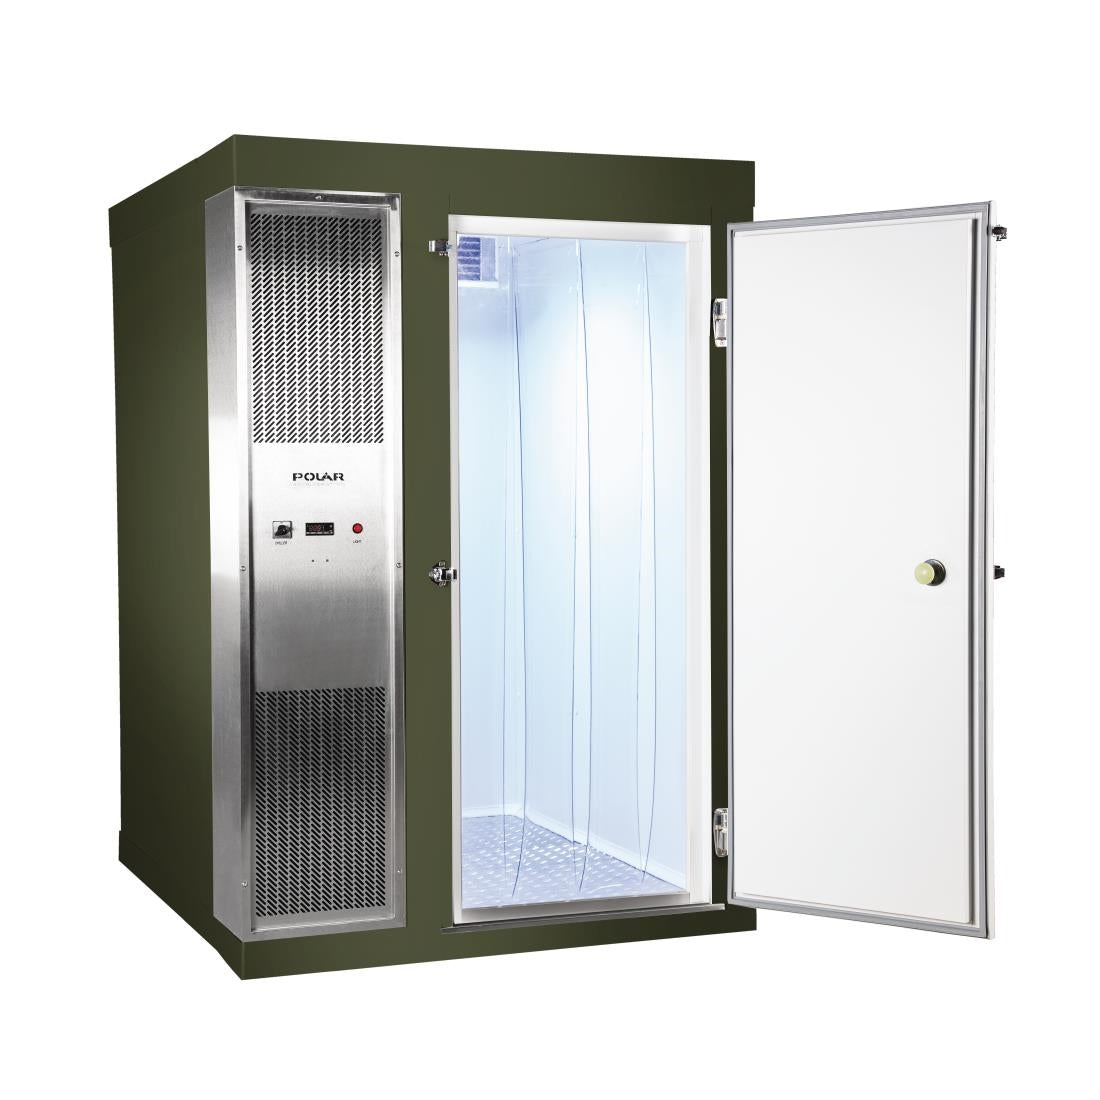 DS480-FGN Polar U-Series 1.2 x 1.5m Integral Walk In Freezer Room Green JD Catering Equipment Solutions Ltd